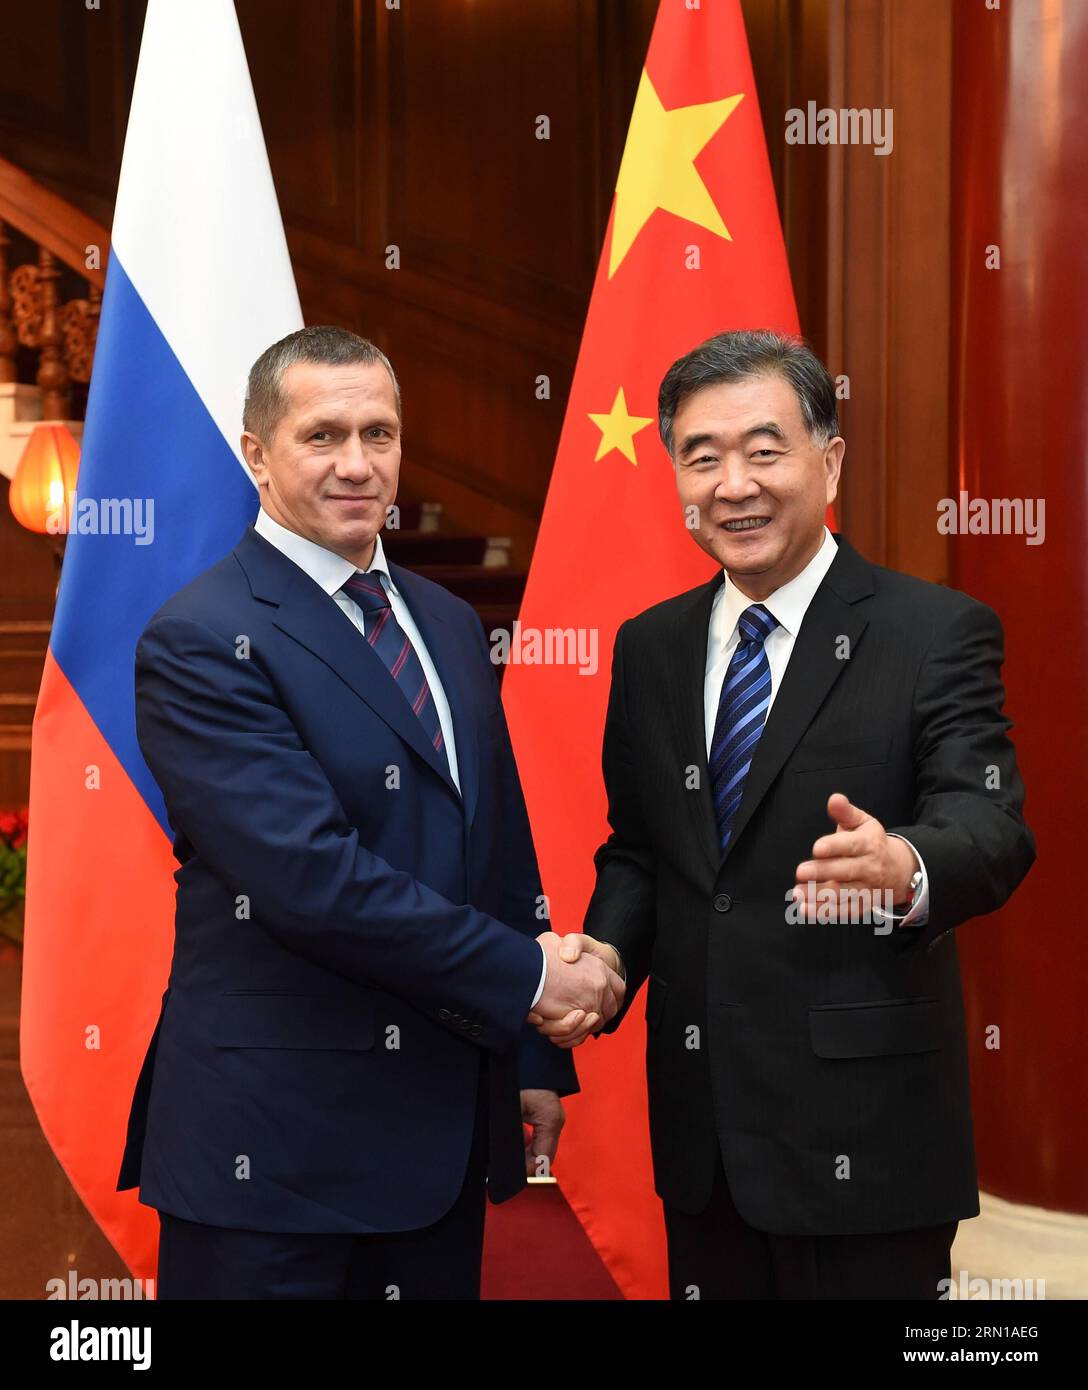 (141211) -- BEIJING, 11 décembre 2014 -- le vice-premier ministre chinois Wang Yang (à droite) rencontre Yuri Trutnev, vice-premier ministre russe et envoyé plénipotentiaire présidentiel dans le district fédéral d'extrême-Orient, à Beijing, capitale de la Chine, le 11 décembre 2014.) (mp) CHINE-BEIJING-WANG YANG-RUSSIE-VICE-Premier ministre (CN) LiuxJiansheng PUBLICATIONxNOTxINxCHN Beijing DEC 11 2014 le Vice-Premier ministre chinois Wang Yang r rencontre Yuri Trutnev Vice-premiers ministres russes et envoyé plénipotentiaire présidentiel dans le District fédéral d'extrême-Orient à Beijing capitale chinoise DEC 11 2014 MP Chine Beijing Wang ya Banque D'Images